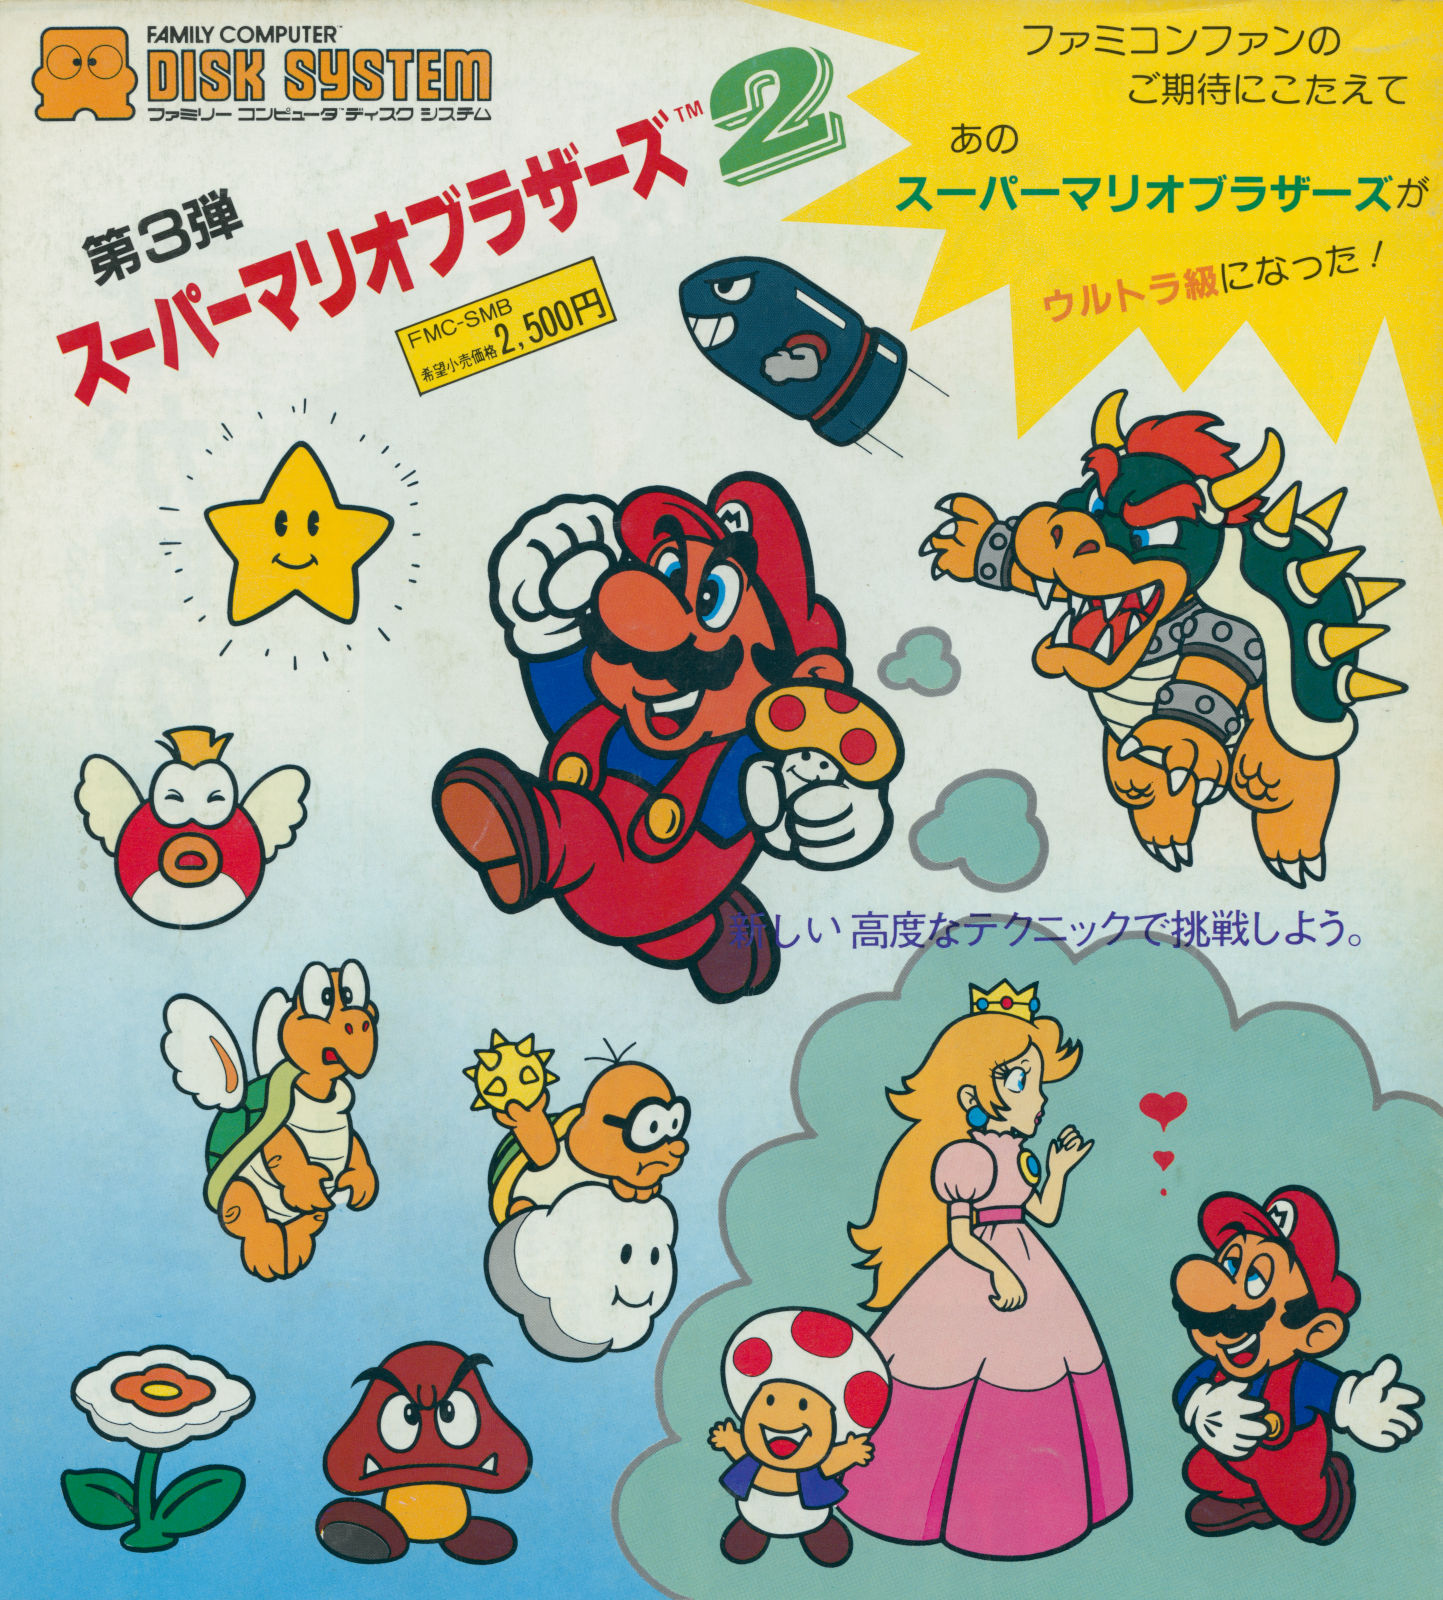 Super Mario Bros. 2・▱𝘉𝘜𝘉𝘉𝘓𝘐𝘚𝘔▱